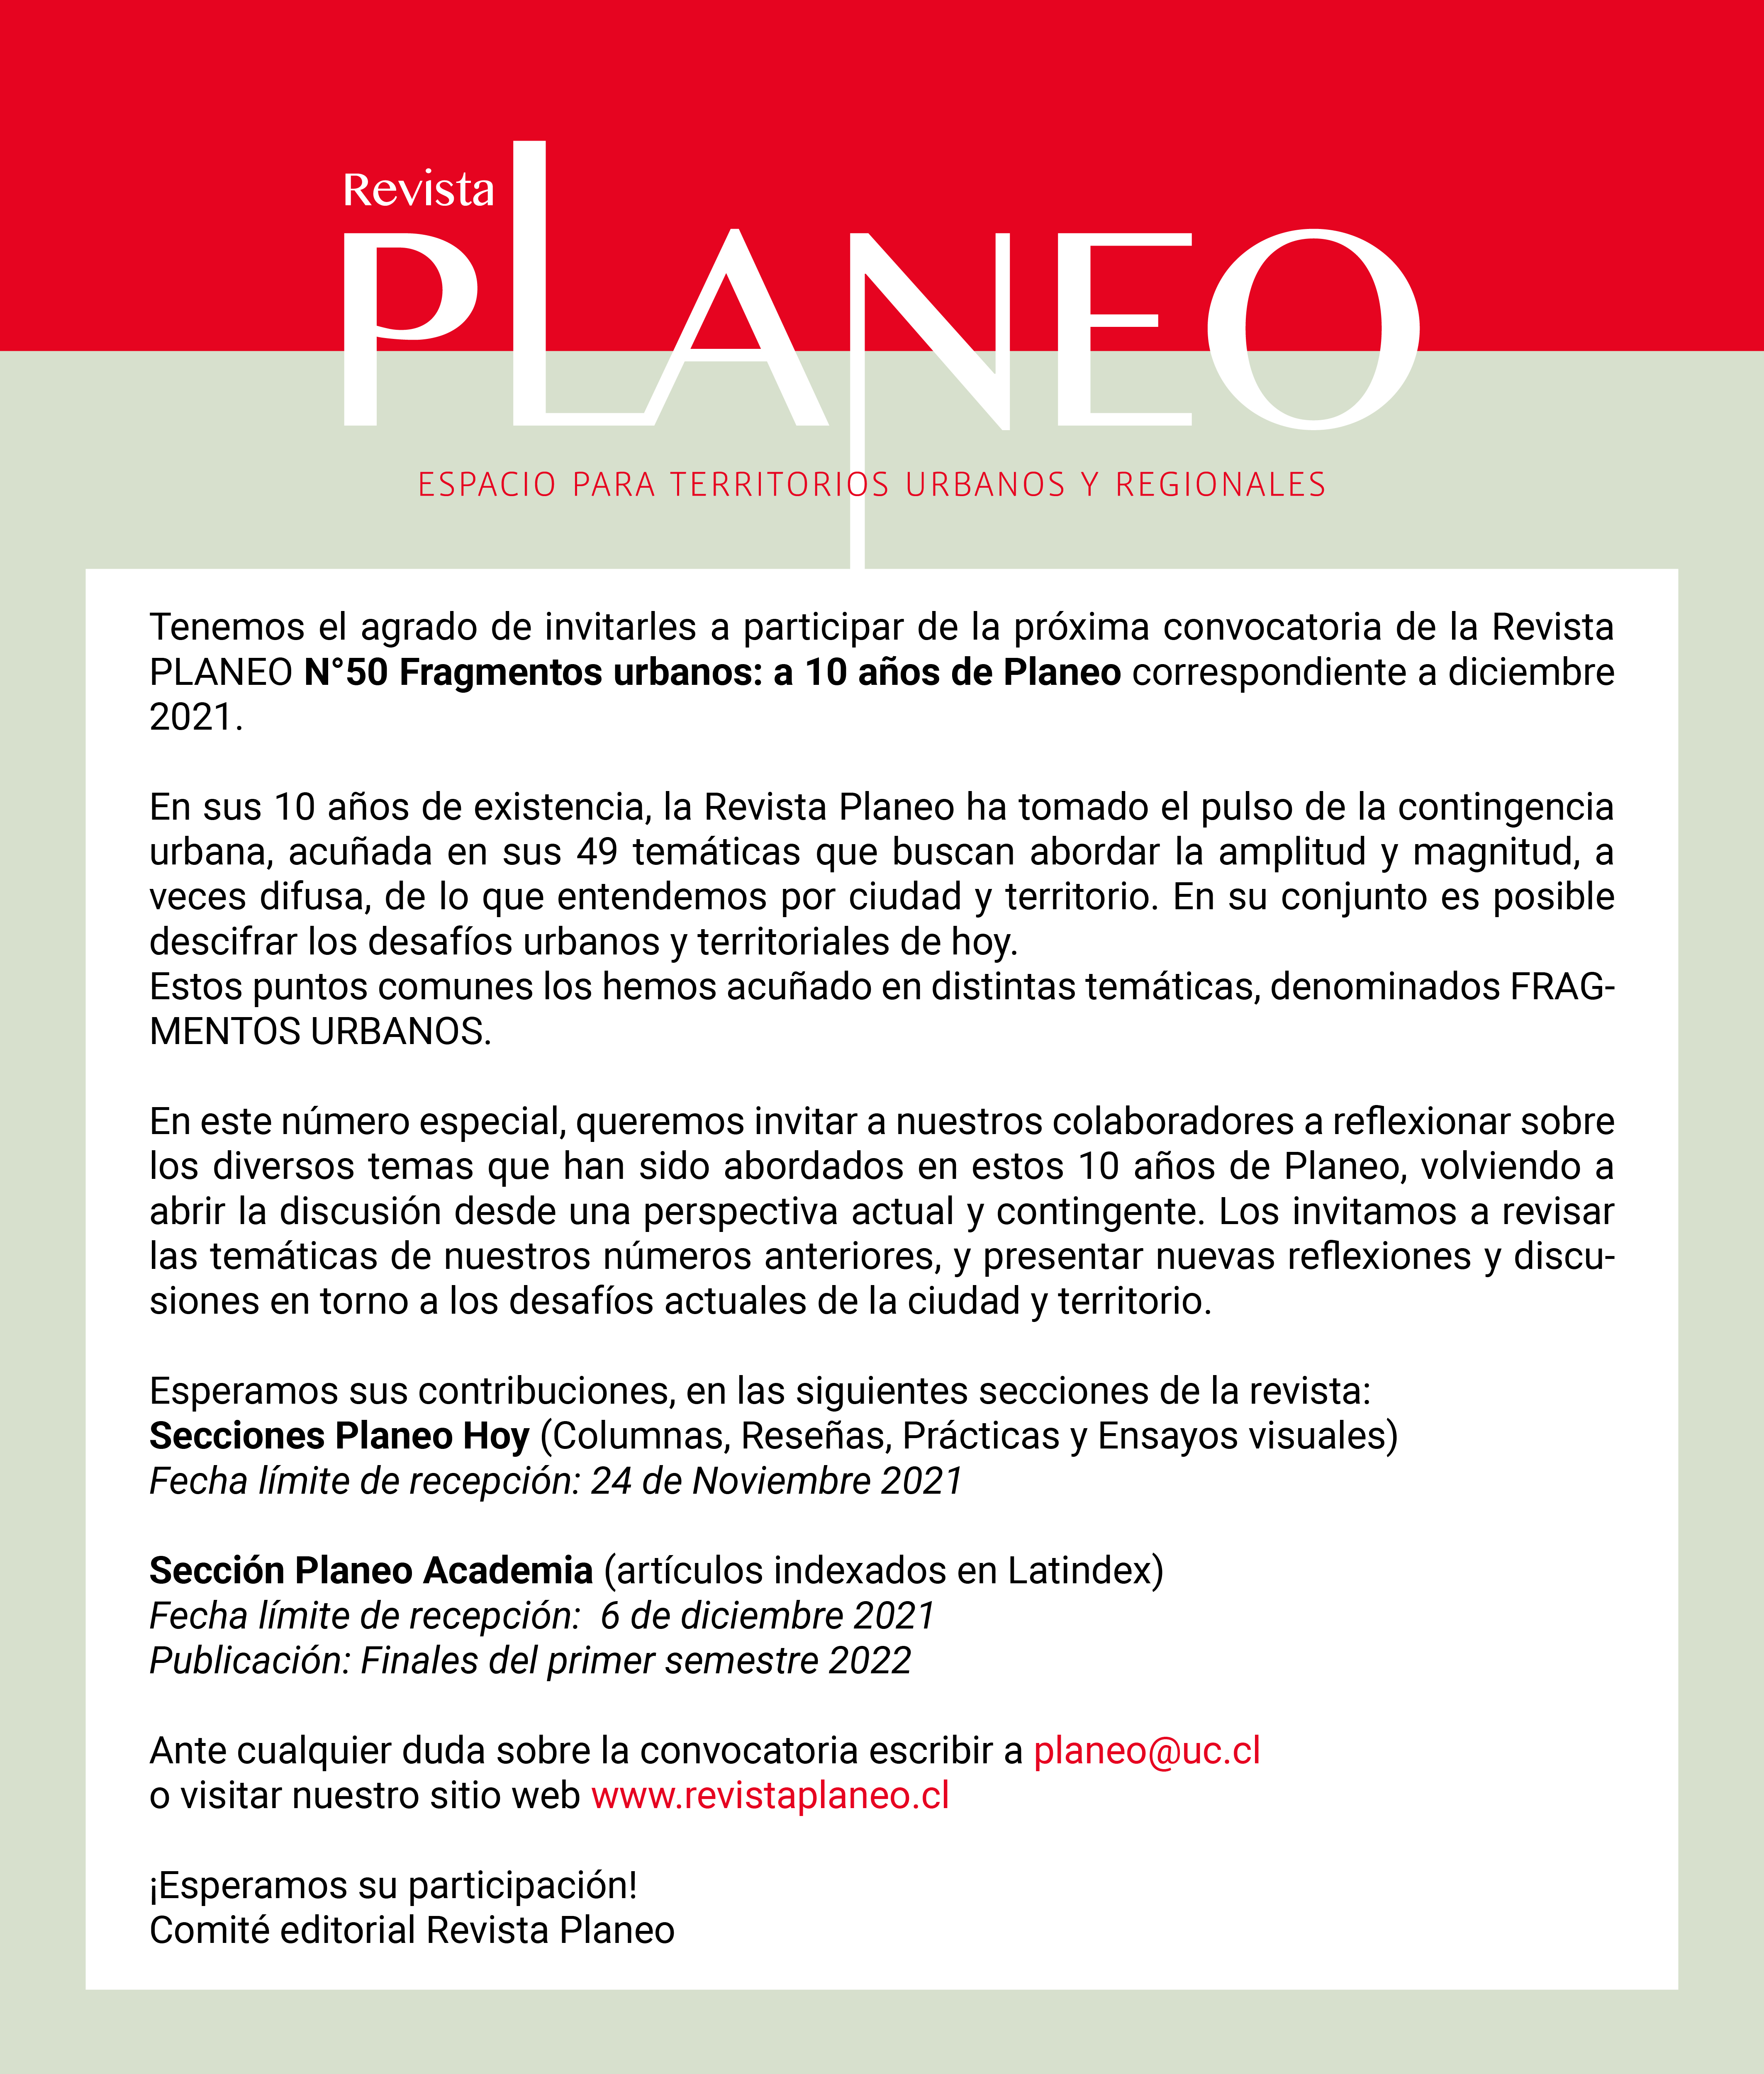 Convocatoria de la Revista PLANEO N°50 “Fragmentos urbanos: a 10 años de Planeo”